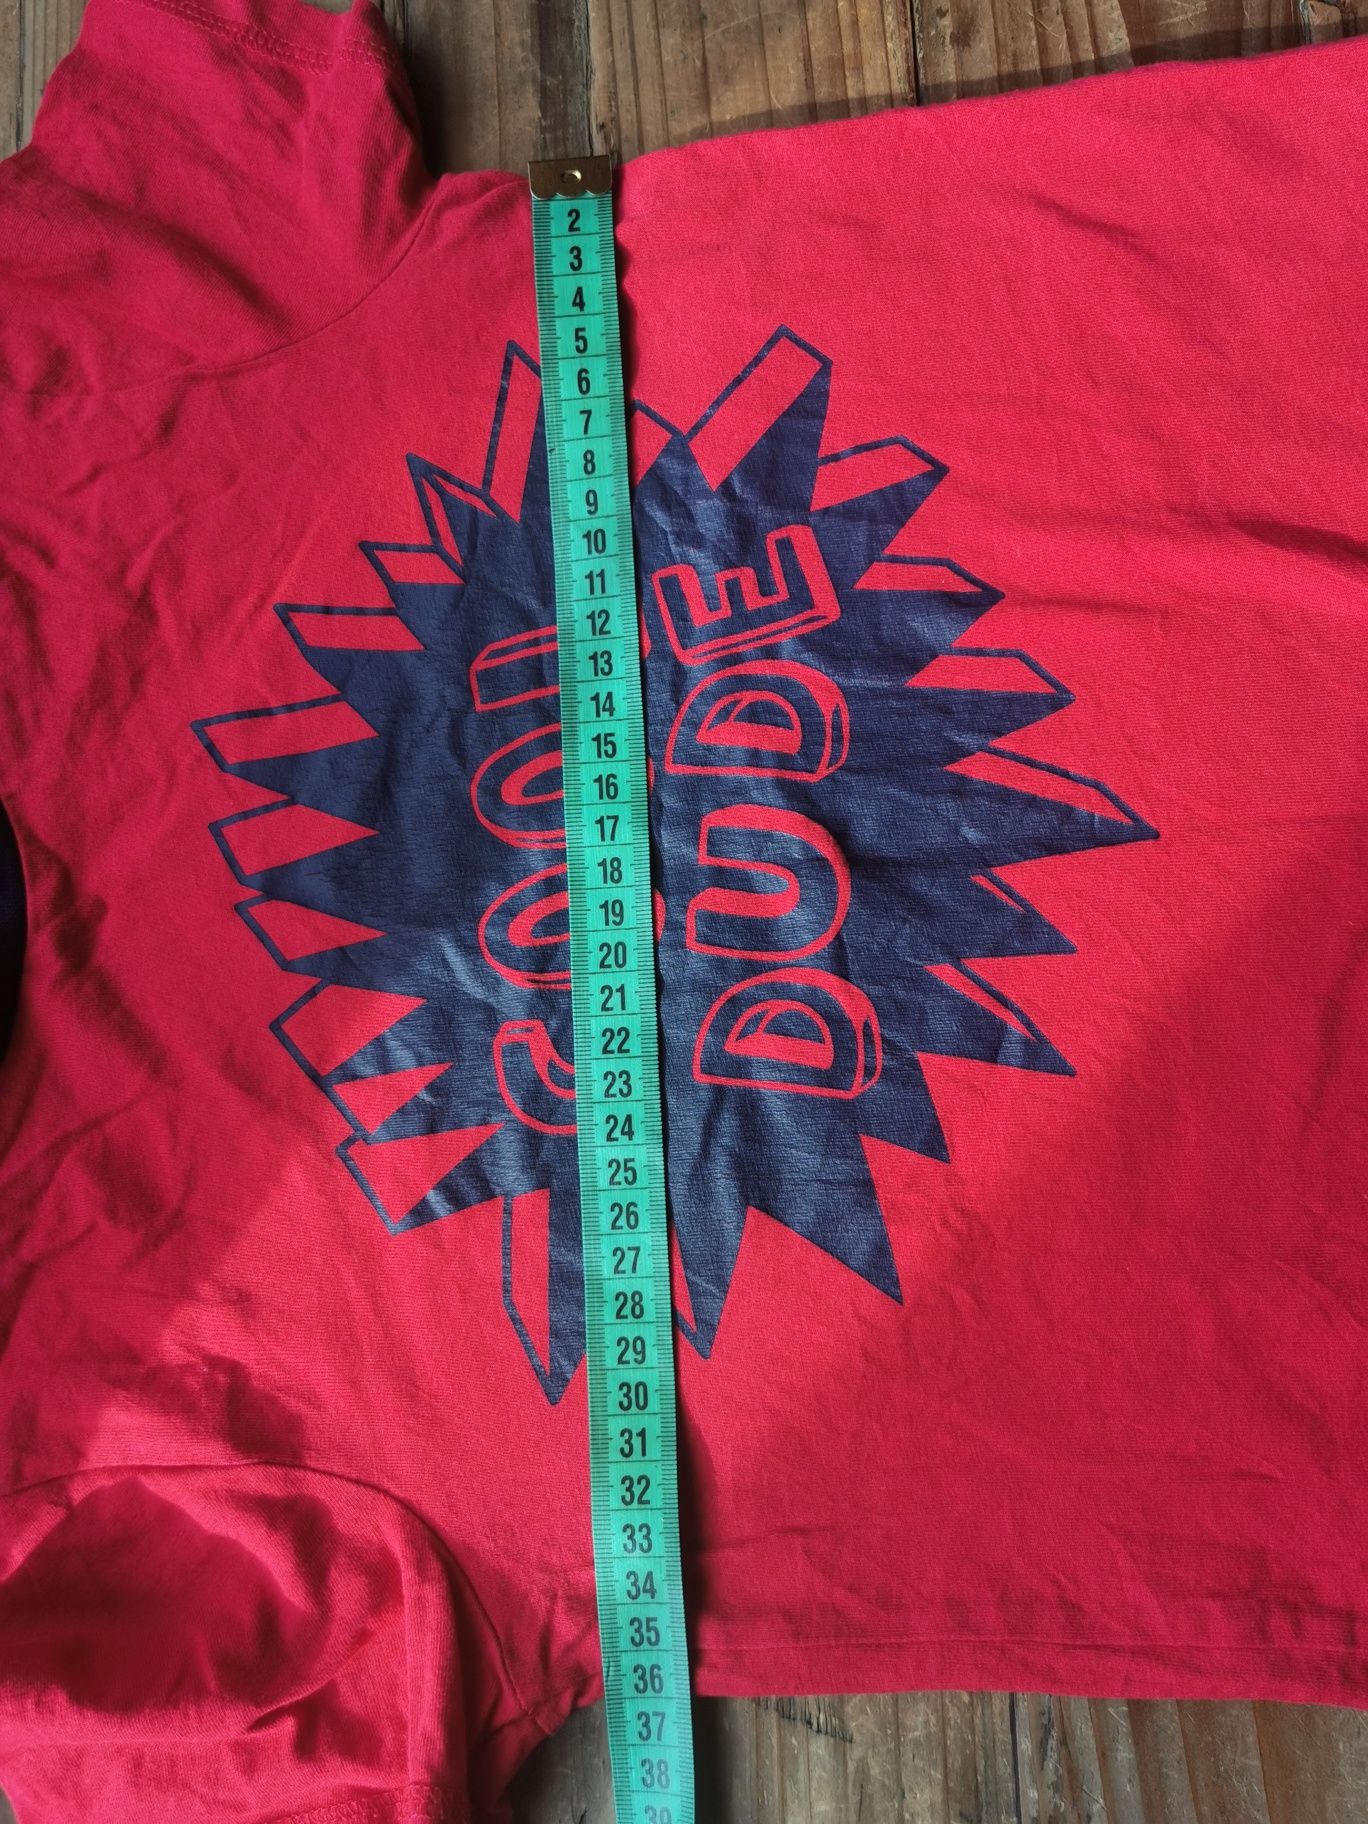 Czerwona koszula t-shirt z napisem, rozmiar 122-128 cm